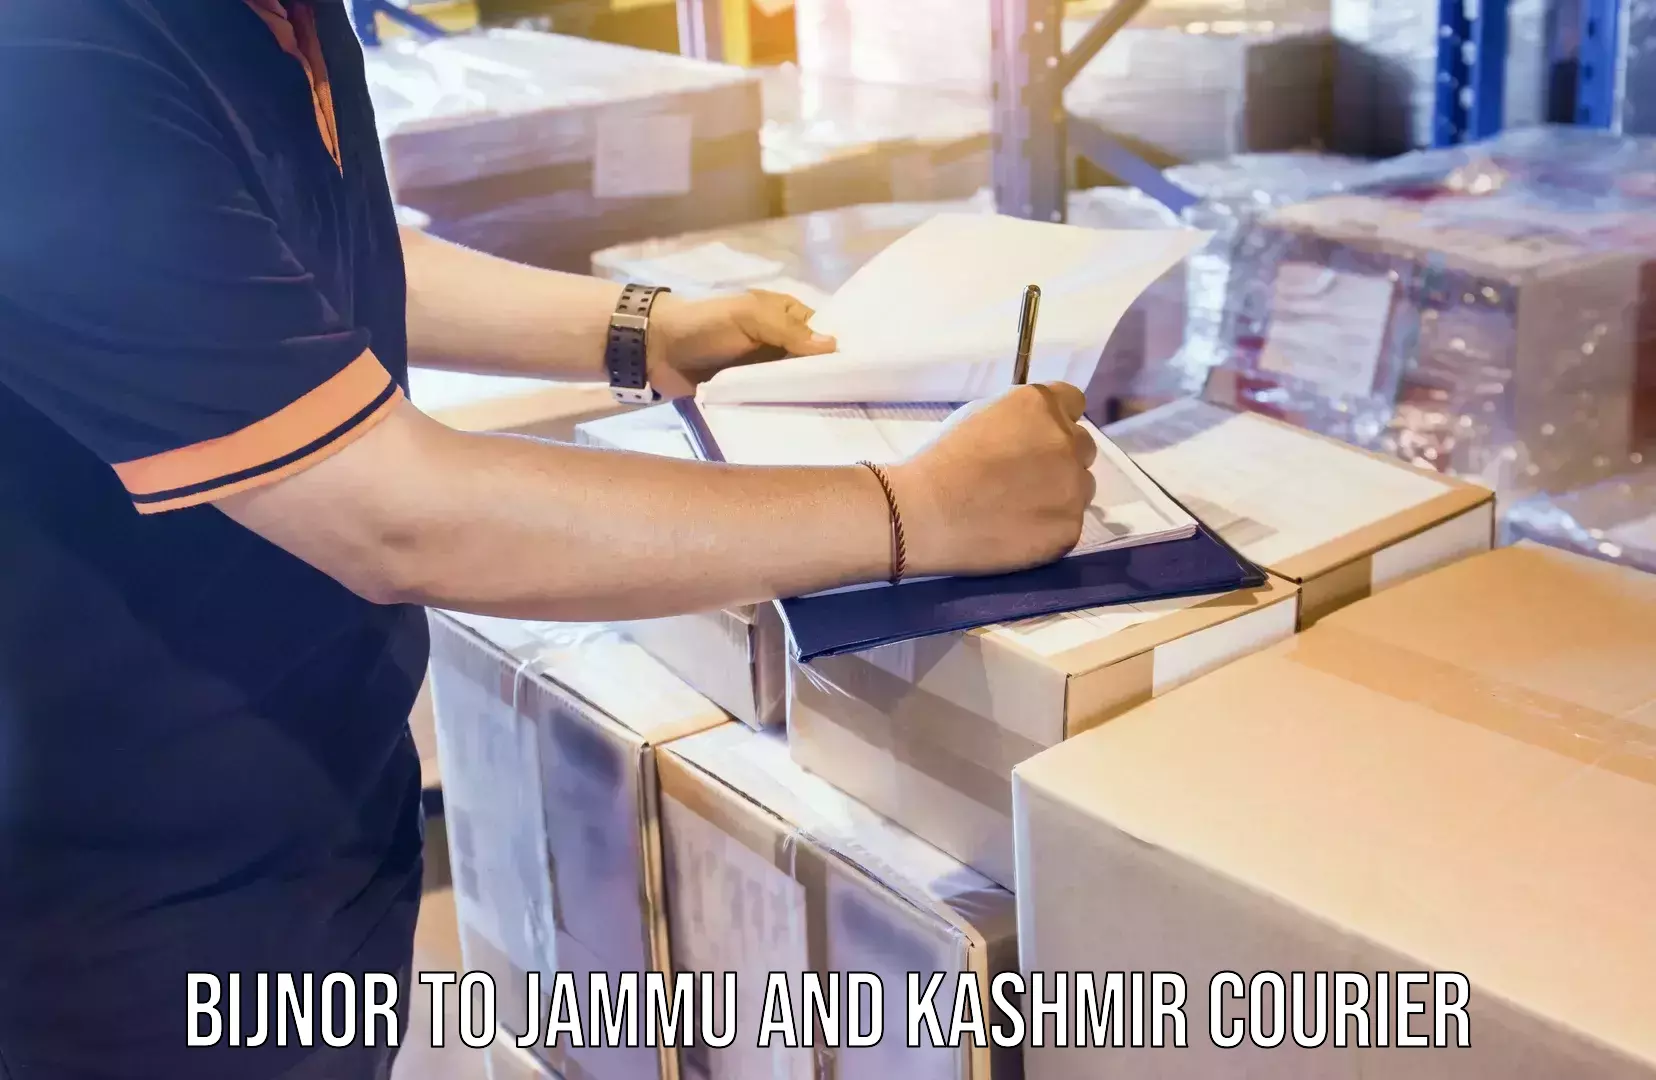 Logistics service provider Bijnor to Jammu and Kashmir